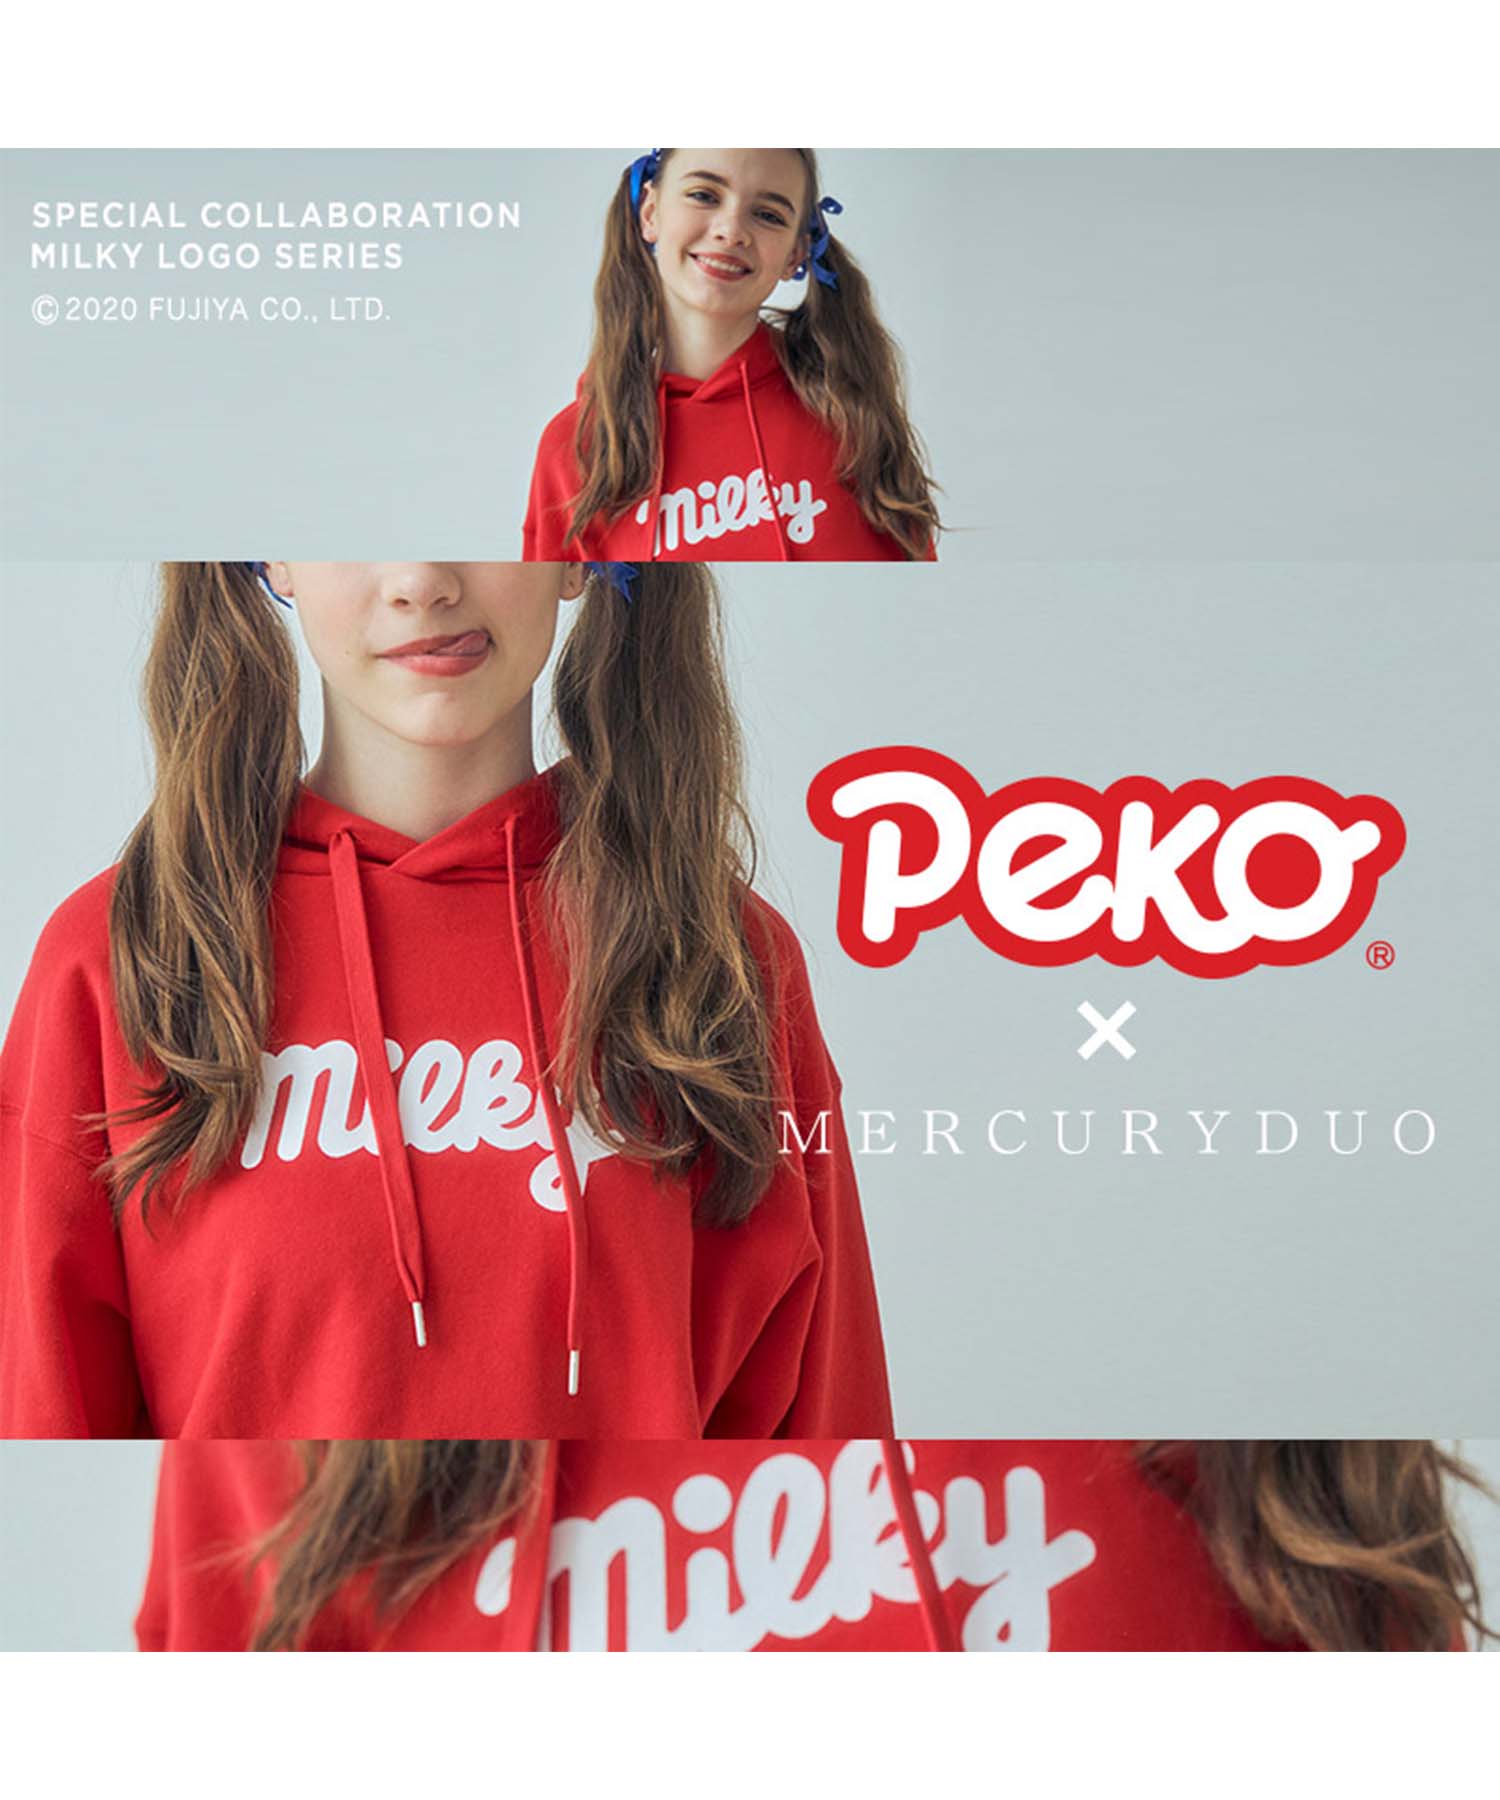 Mercuryduo マーキュリーデュオのトピックス Peko Mercuryduo ペコちゃん とのスペシャルコラボレーションが実現 Zozotown